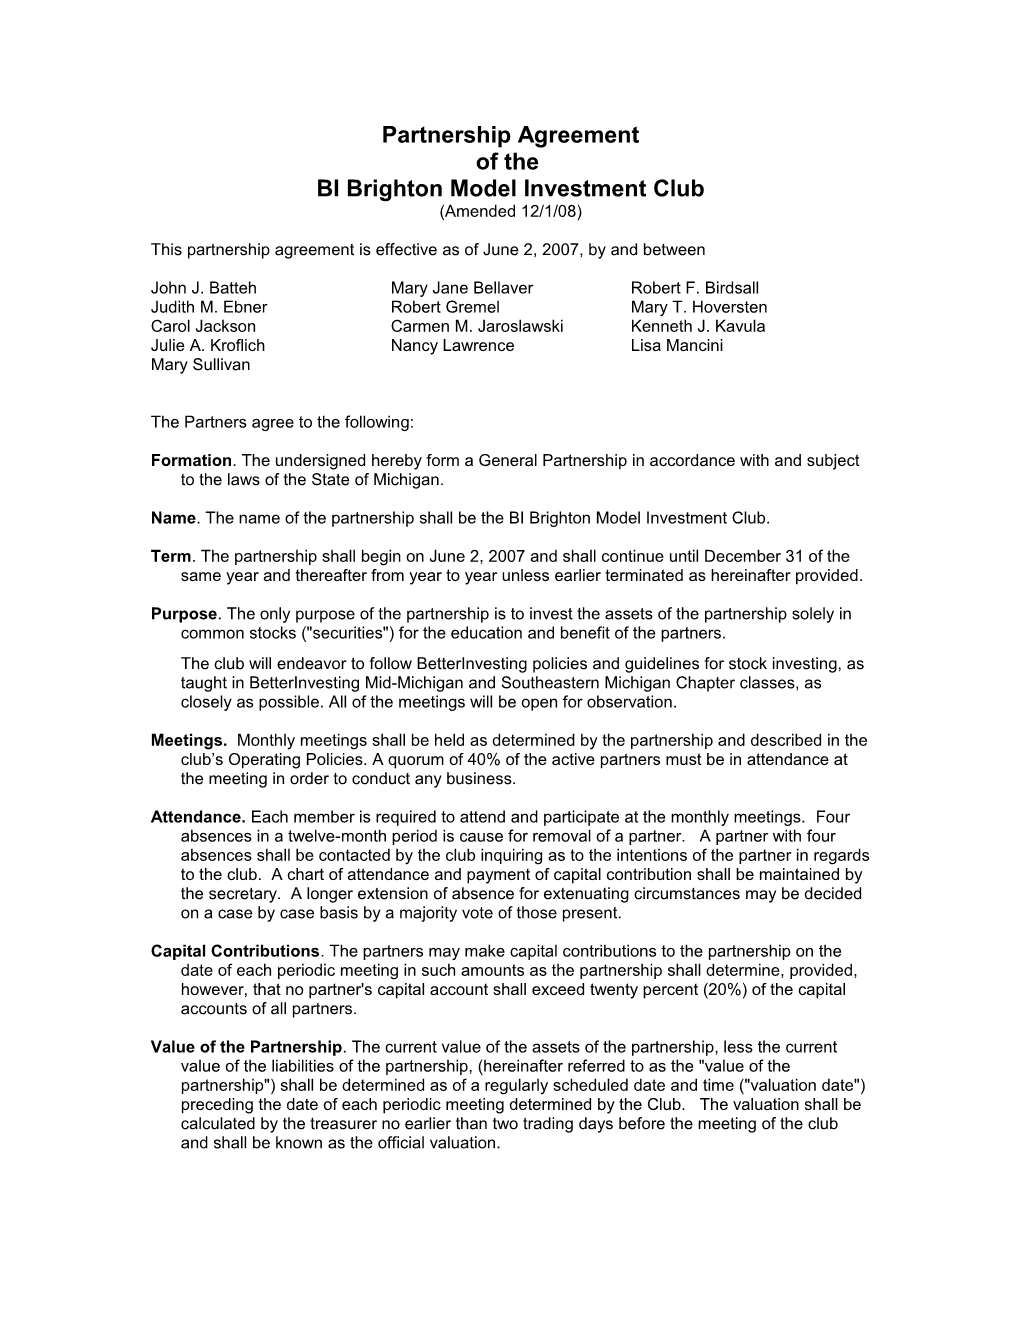 BI Brighton Model Investment Club